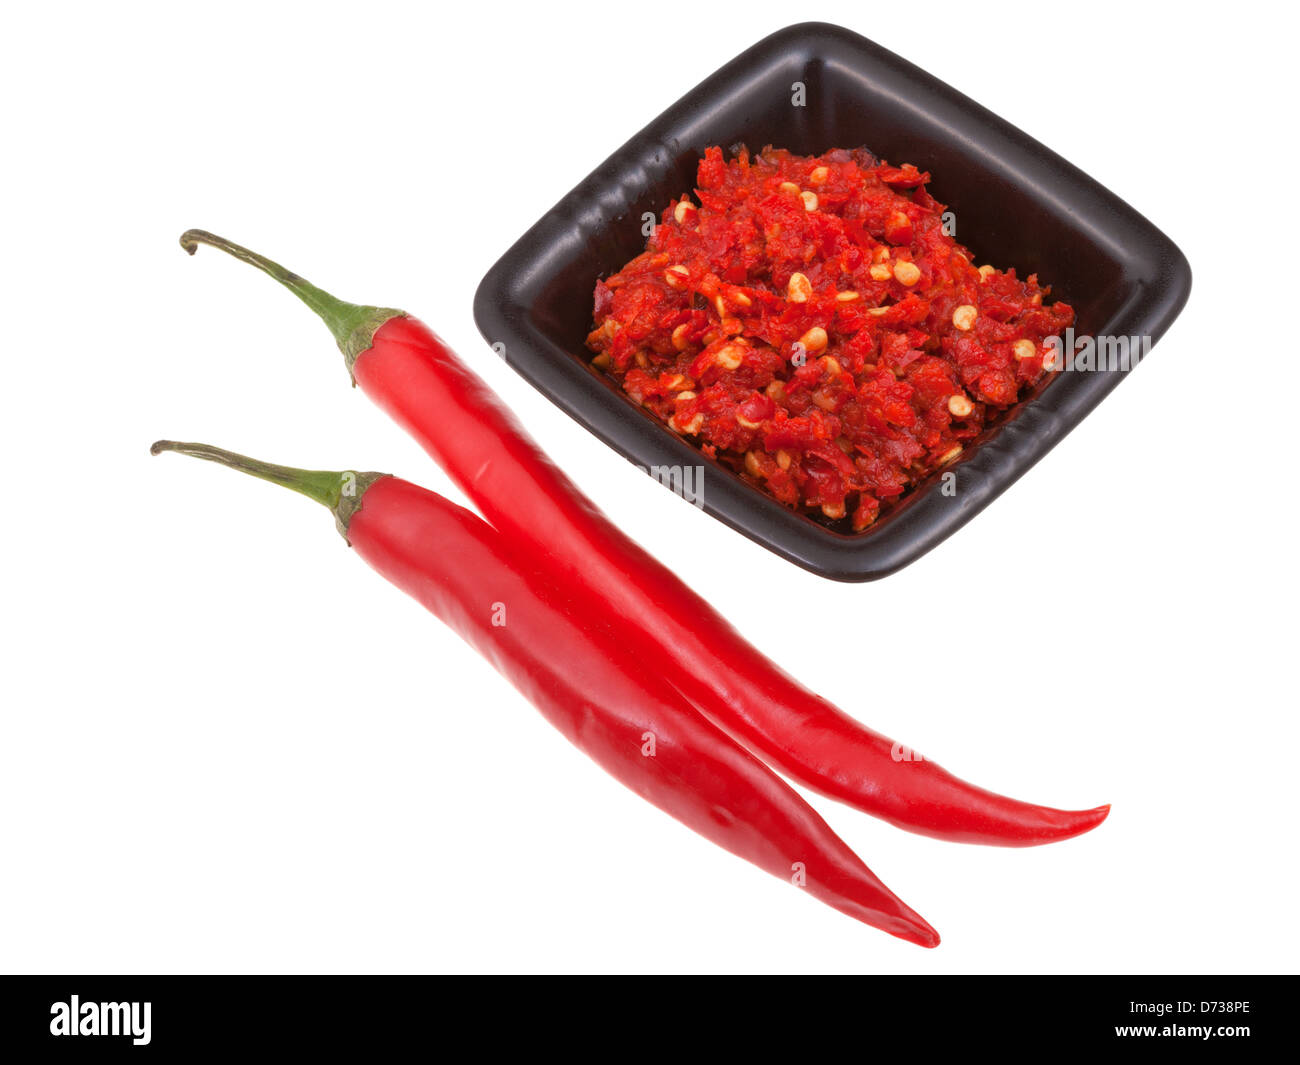 Ghana Best Shito Hot Chili Sauce Stock Photo - Alamy